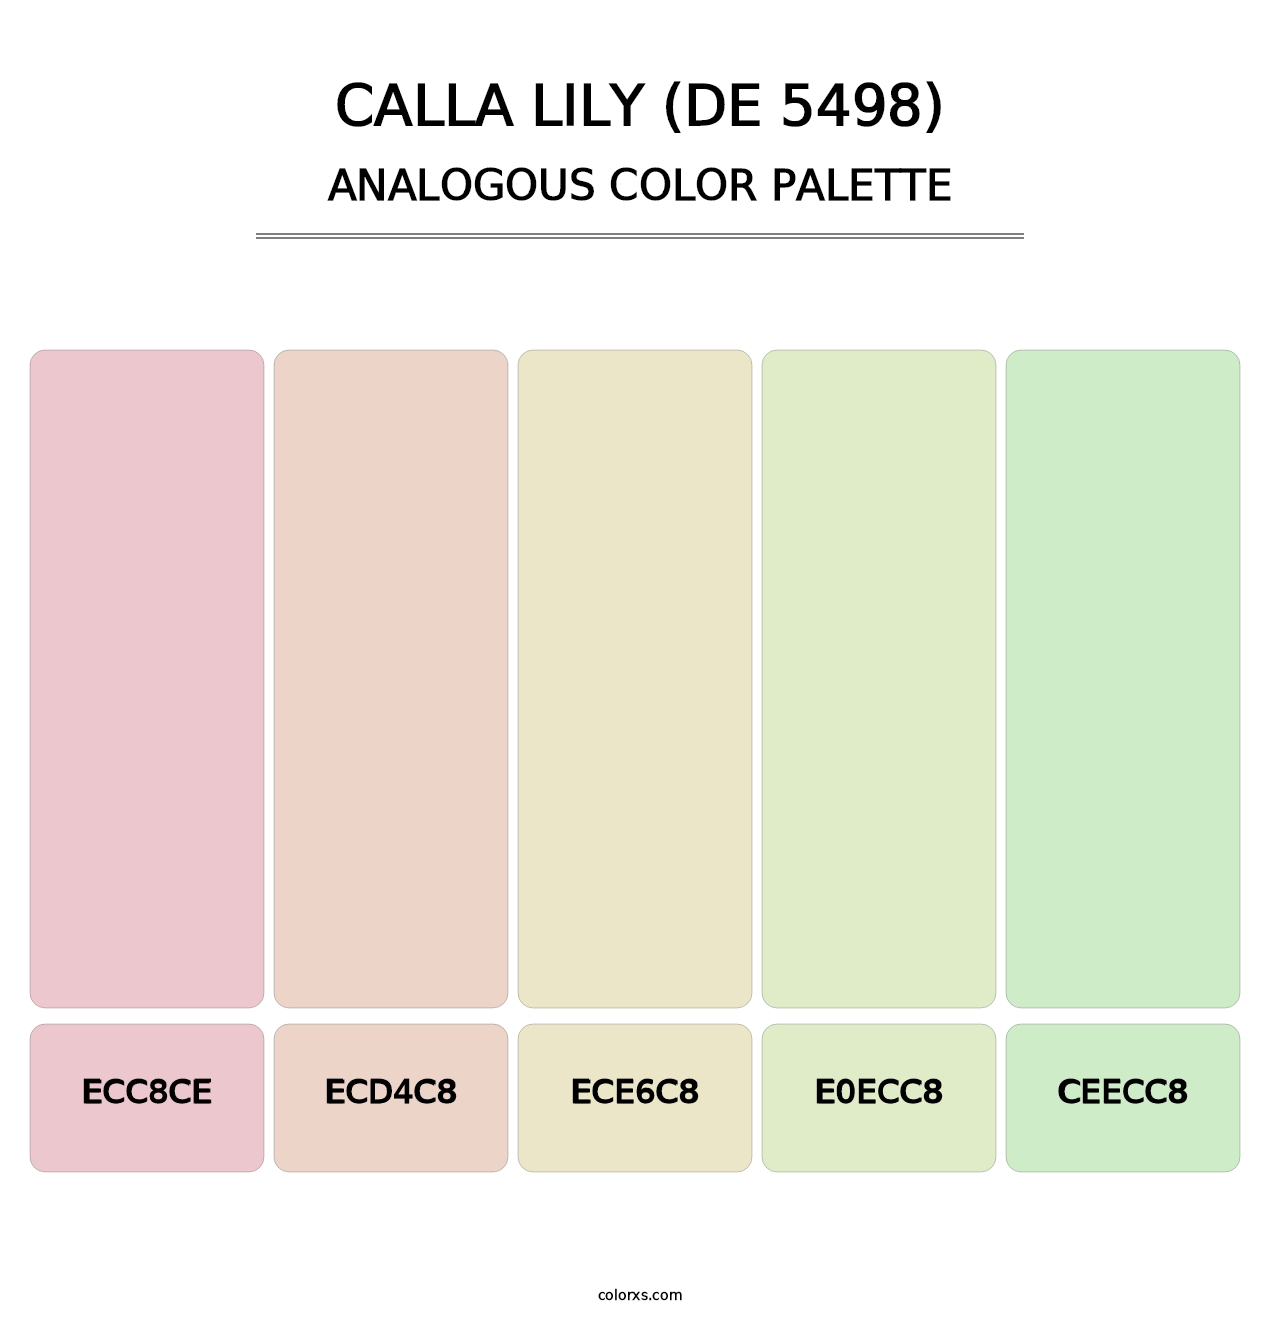 Calla Lily (DE 5498) - Analogous Color Palette